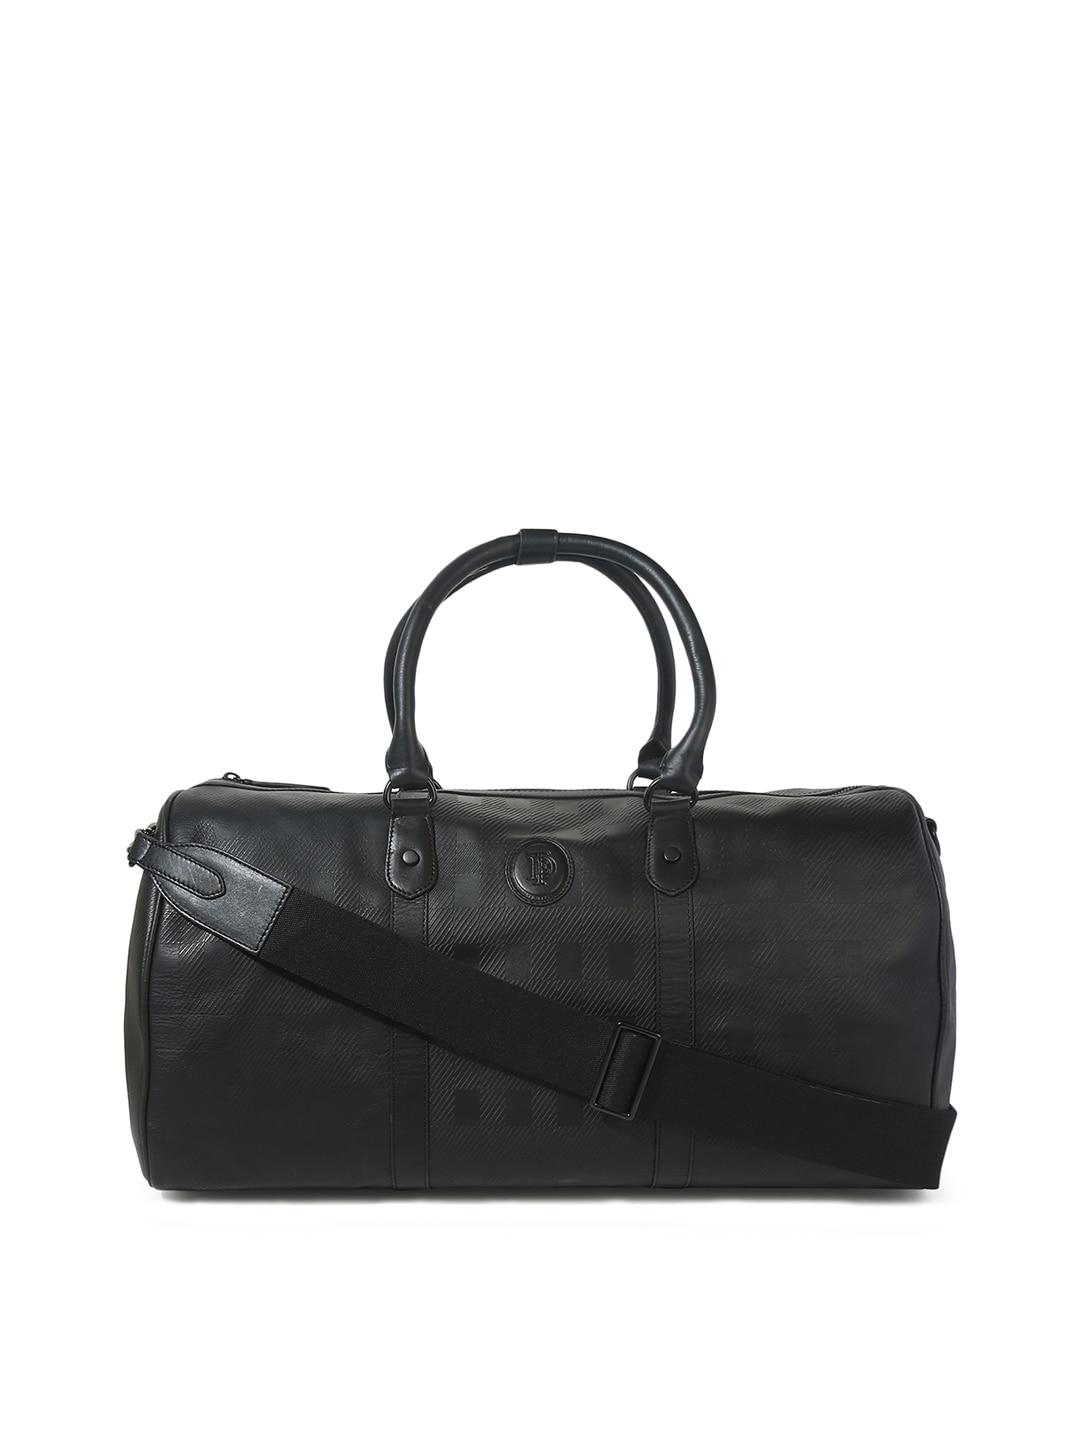 ted-baker-black-leather-oversized-structured-handheld-bag